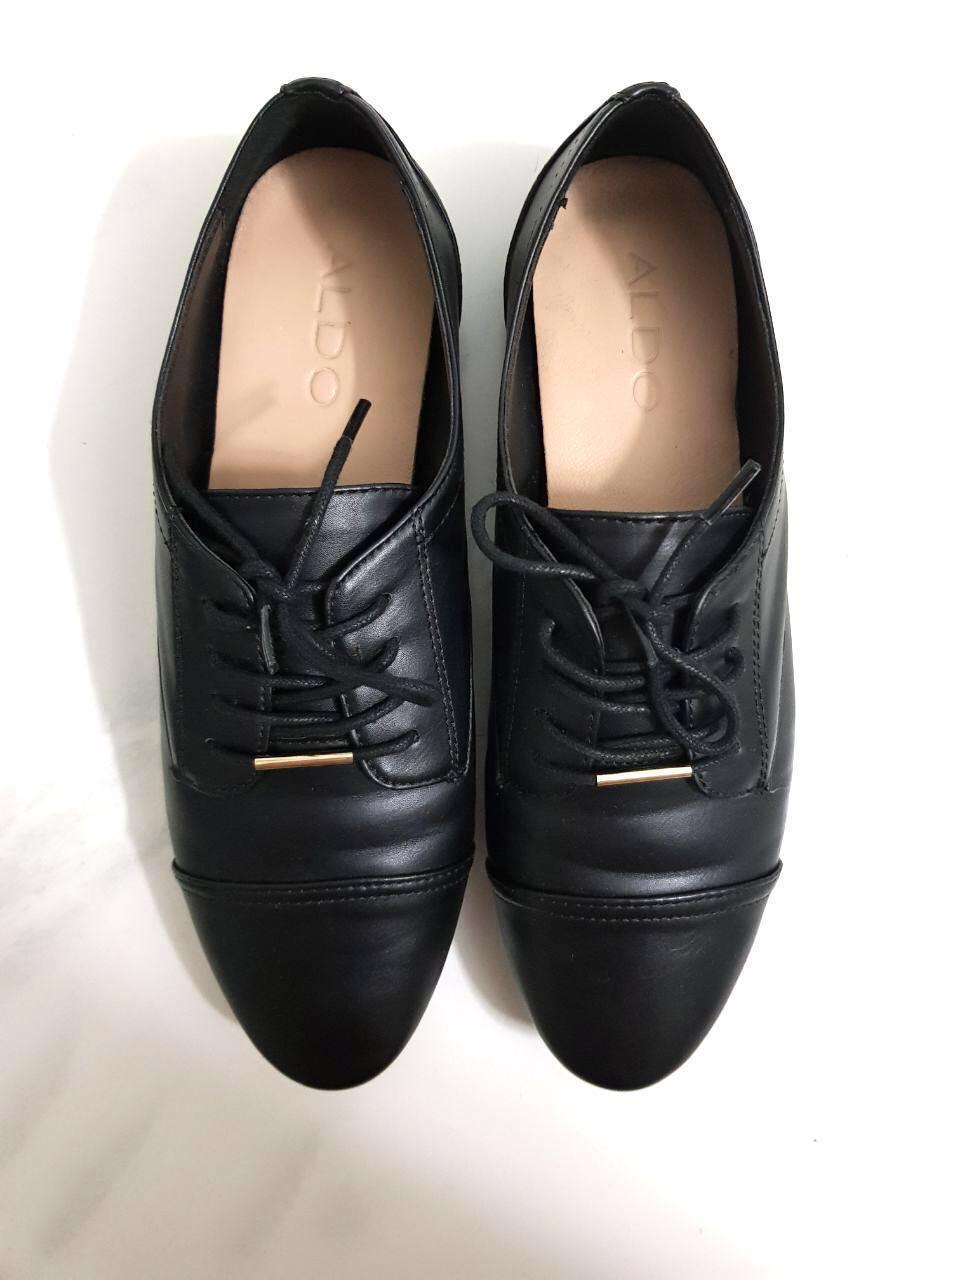 Aldo Black Lace Up Shoes, Women's 